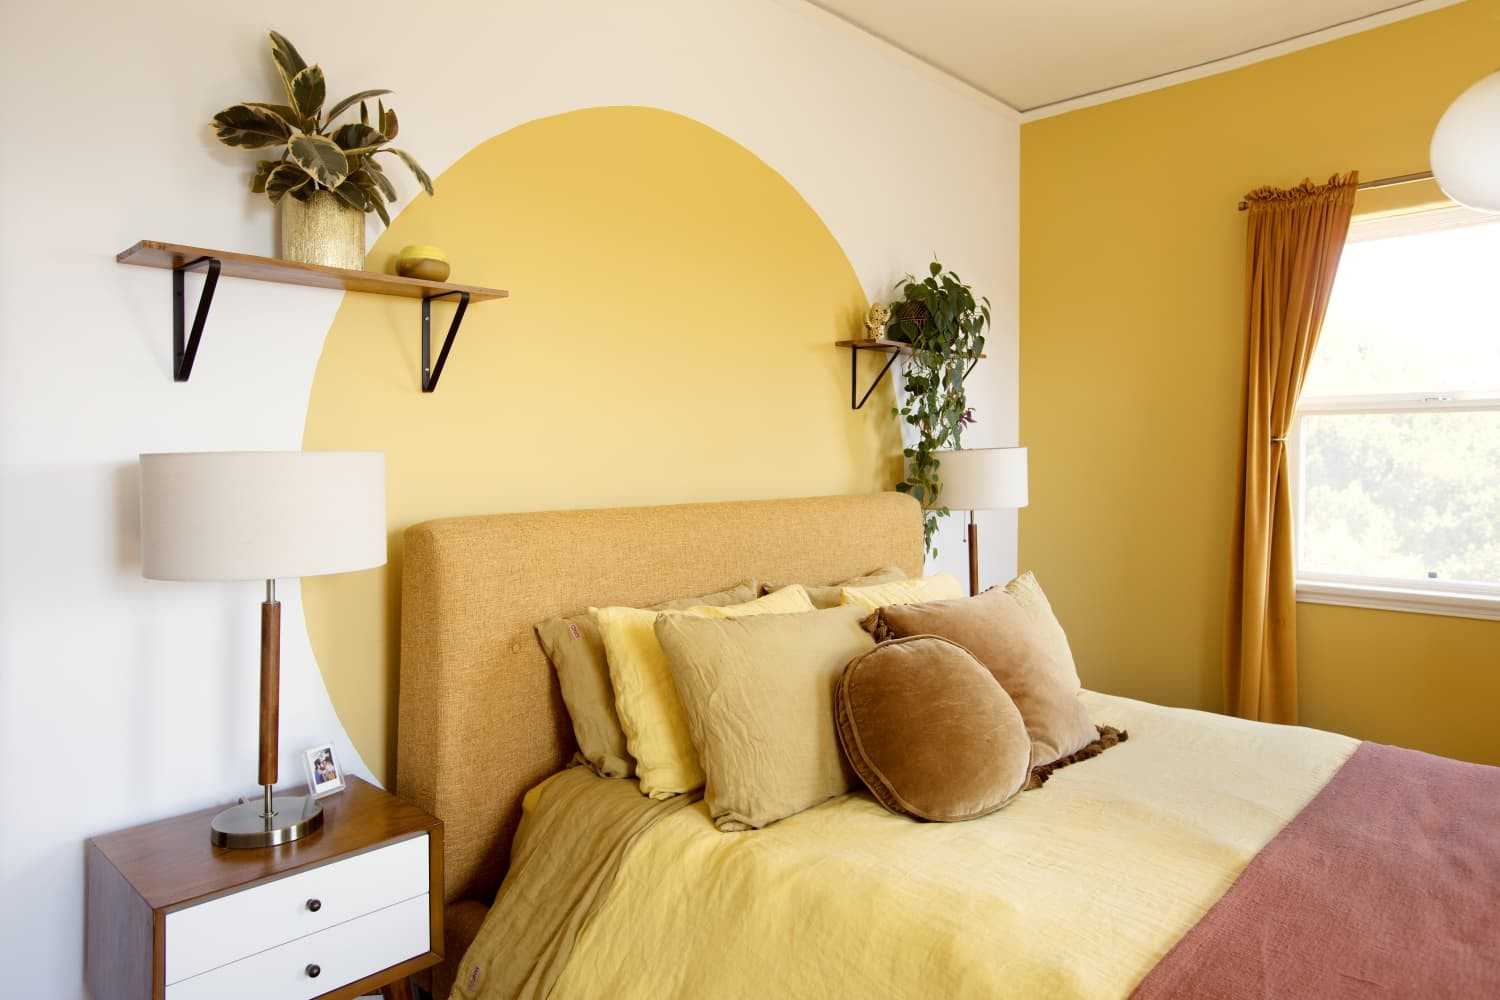 Với gam màu vàng pastel sáng, không gian trong căn nhà của bạn sẽ mang lại cảm giác ấm cúng